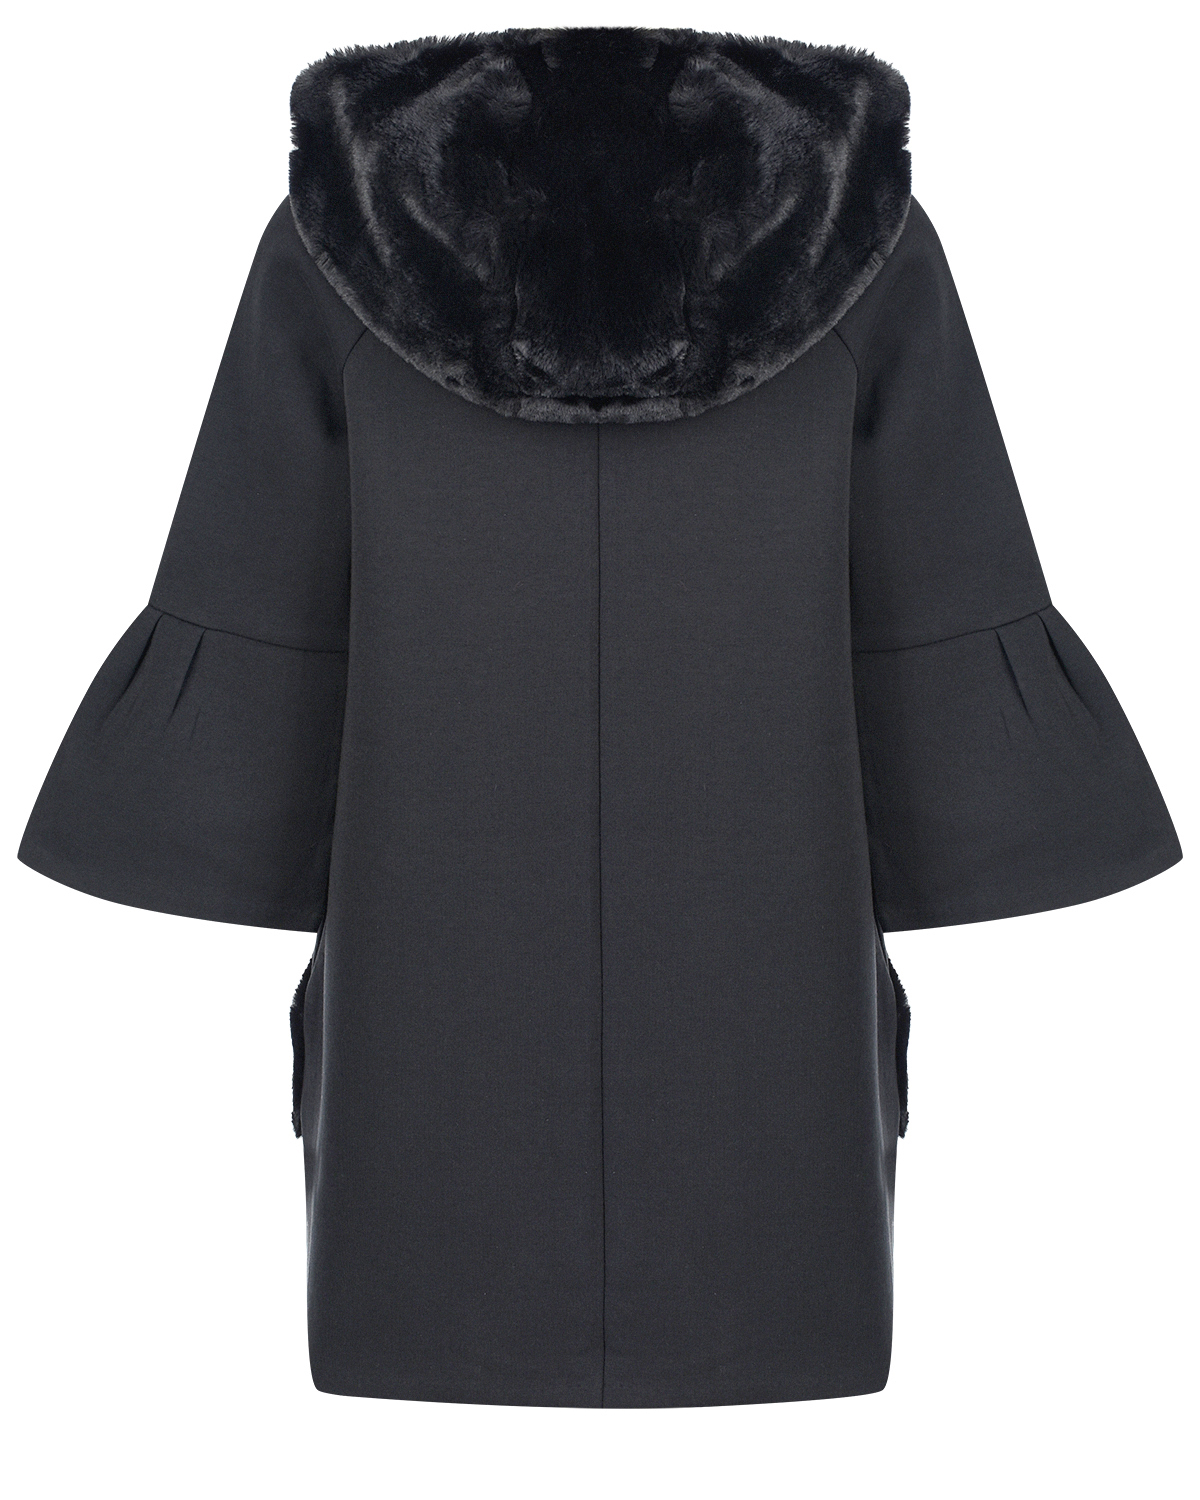 Черное платье с капюшоном из эко-меха Emporio Armani детское - фото 2